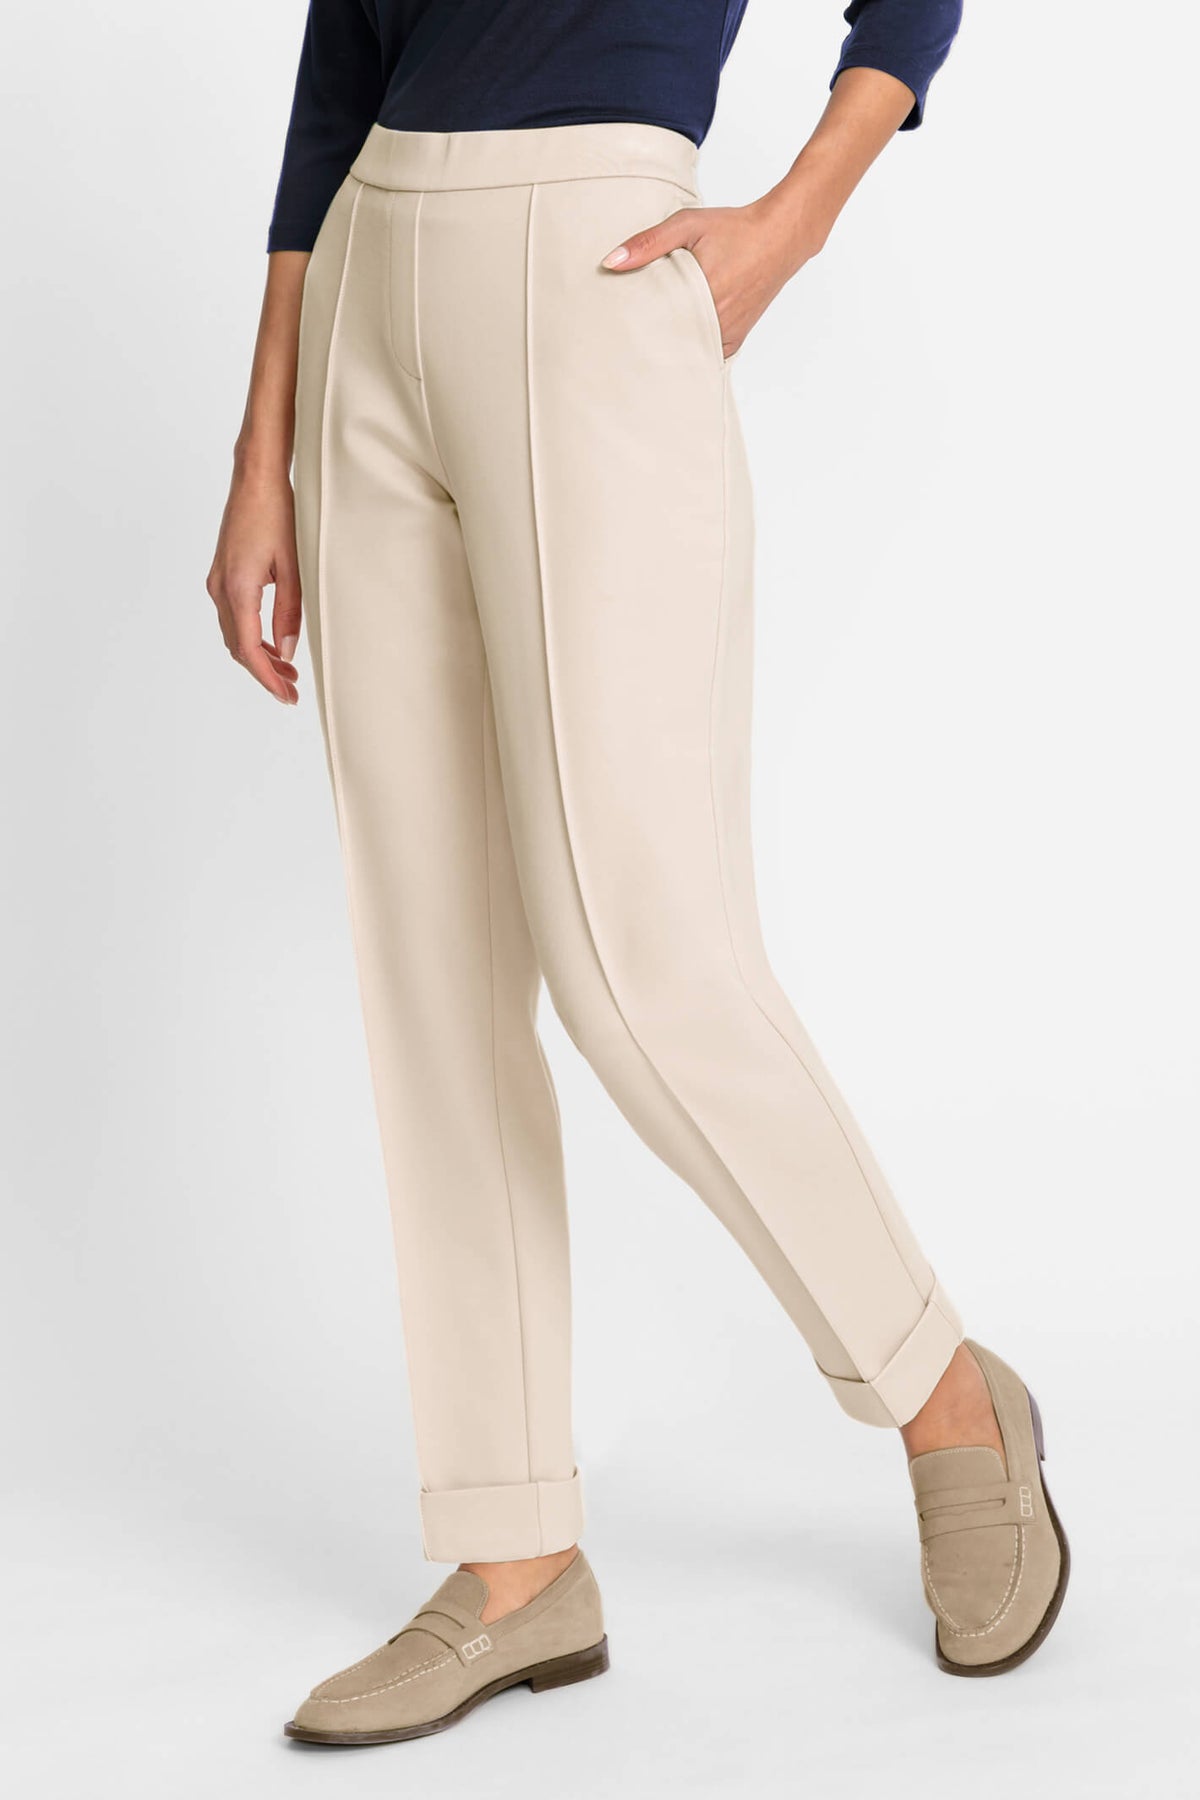 Women's Loose-Fit Dandelion Print Trousers Deal - Wowcher